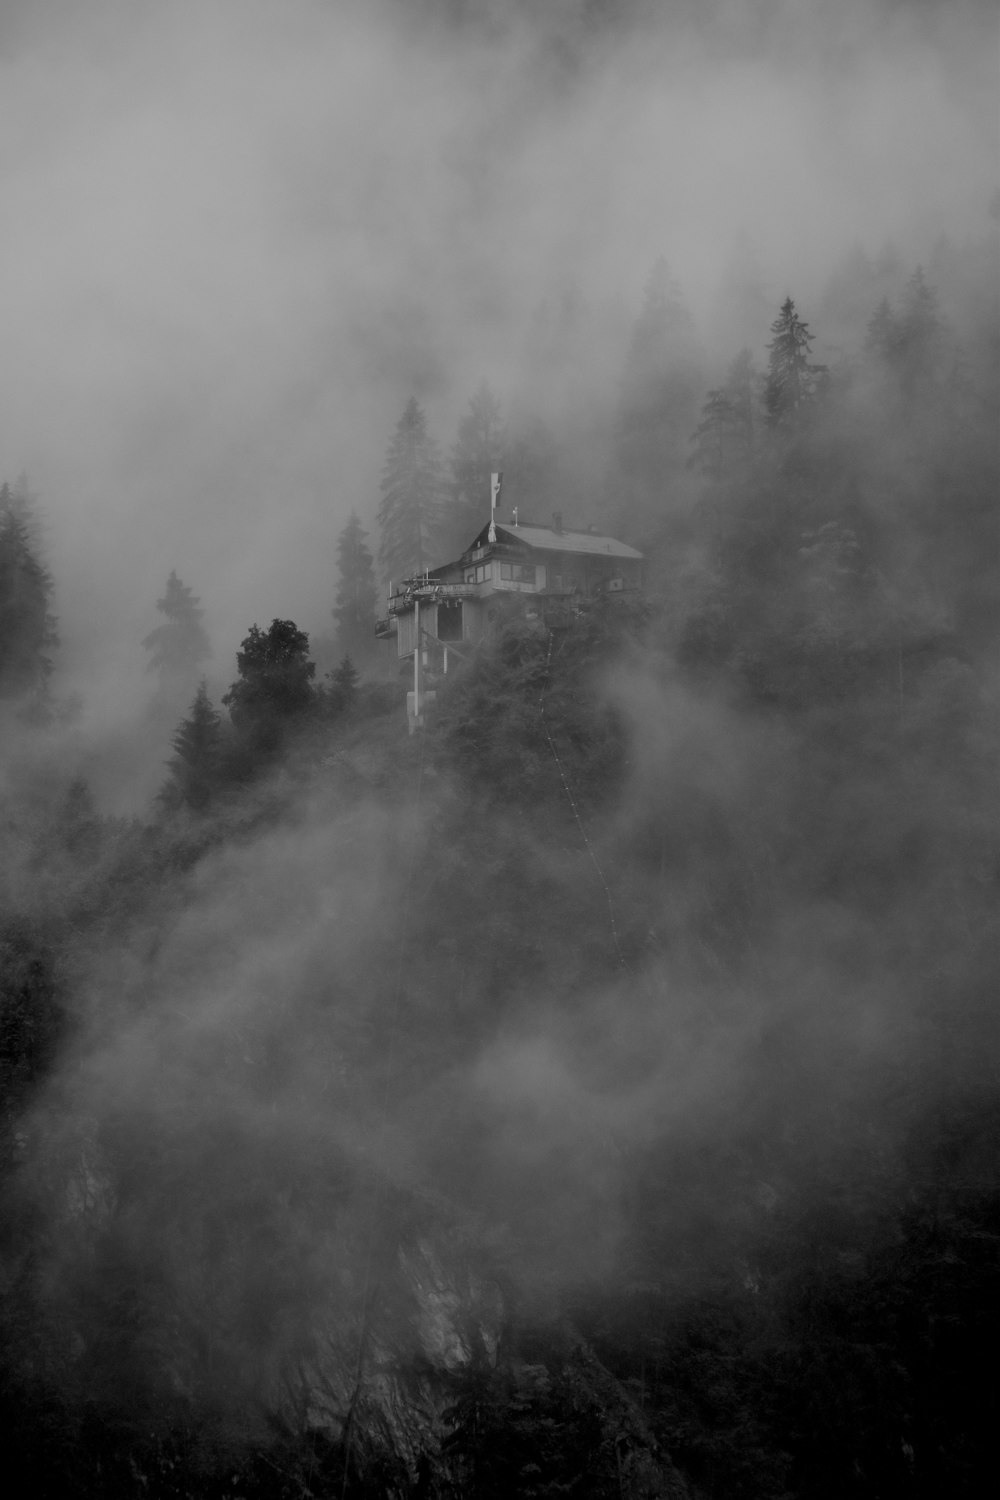 Fotografia in scala di grigi della foresta nebbiosa